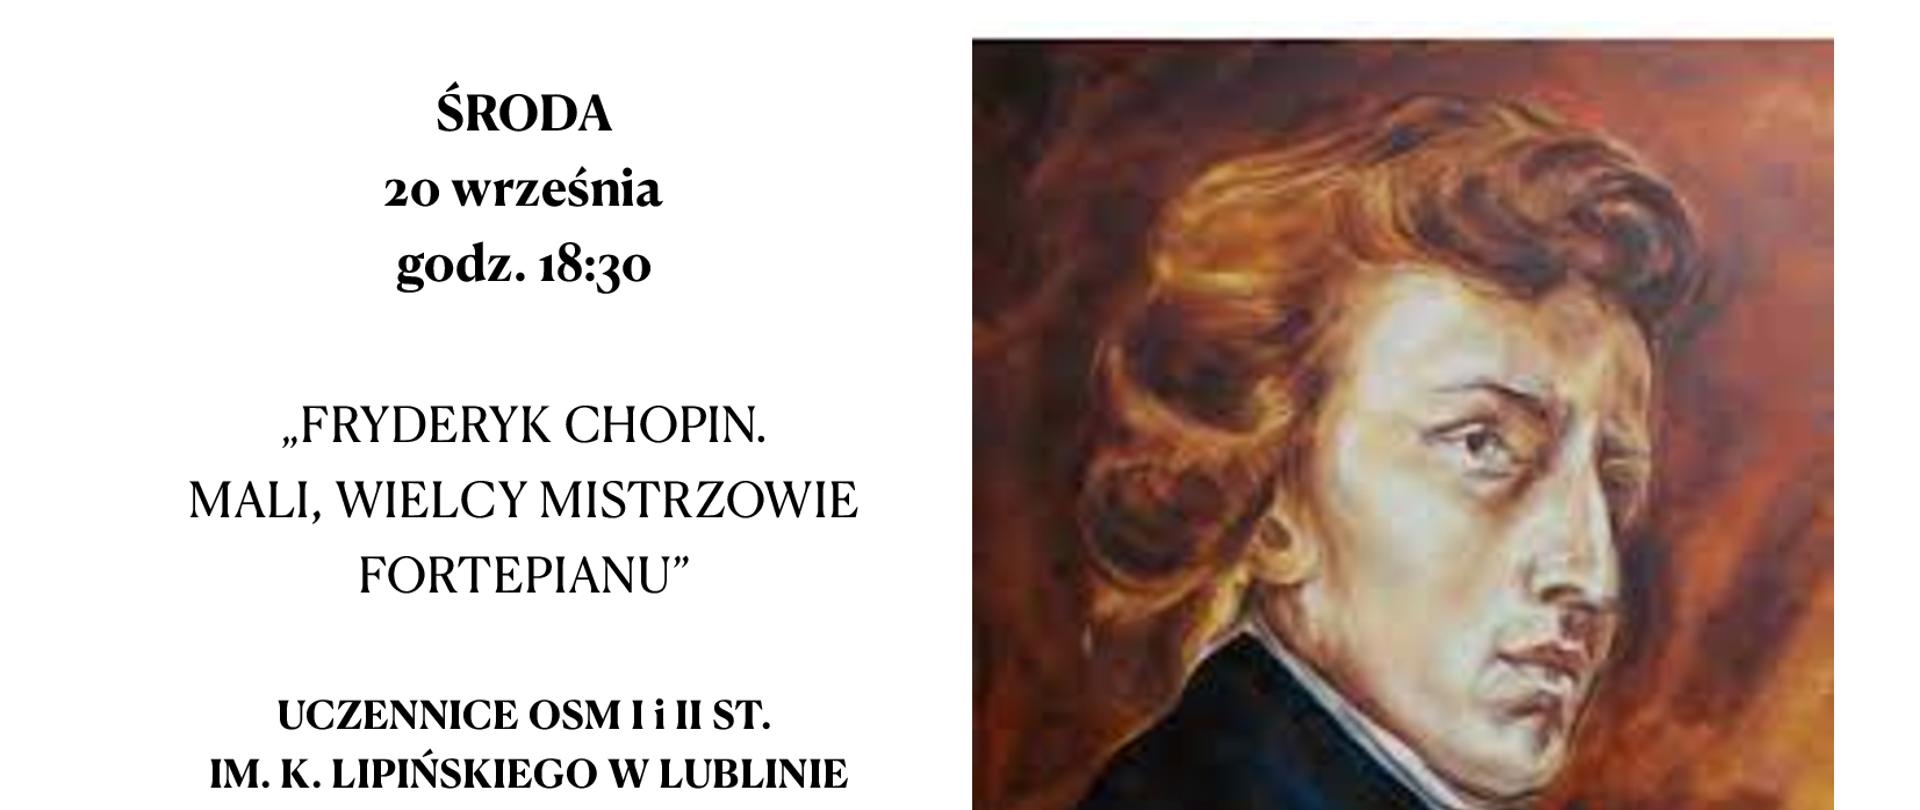 Plakat zawierający informacje na temat programu koncertu i portret Fryderyka Chopina na białym tle